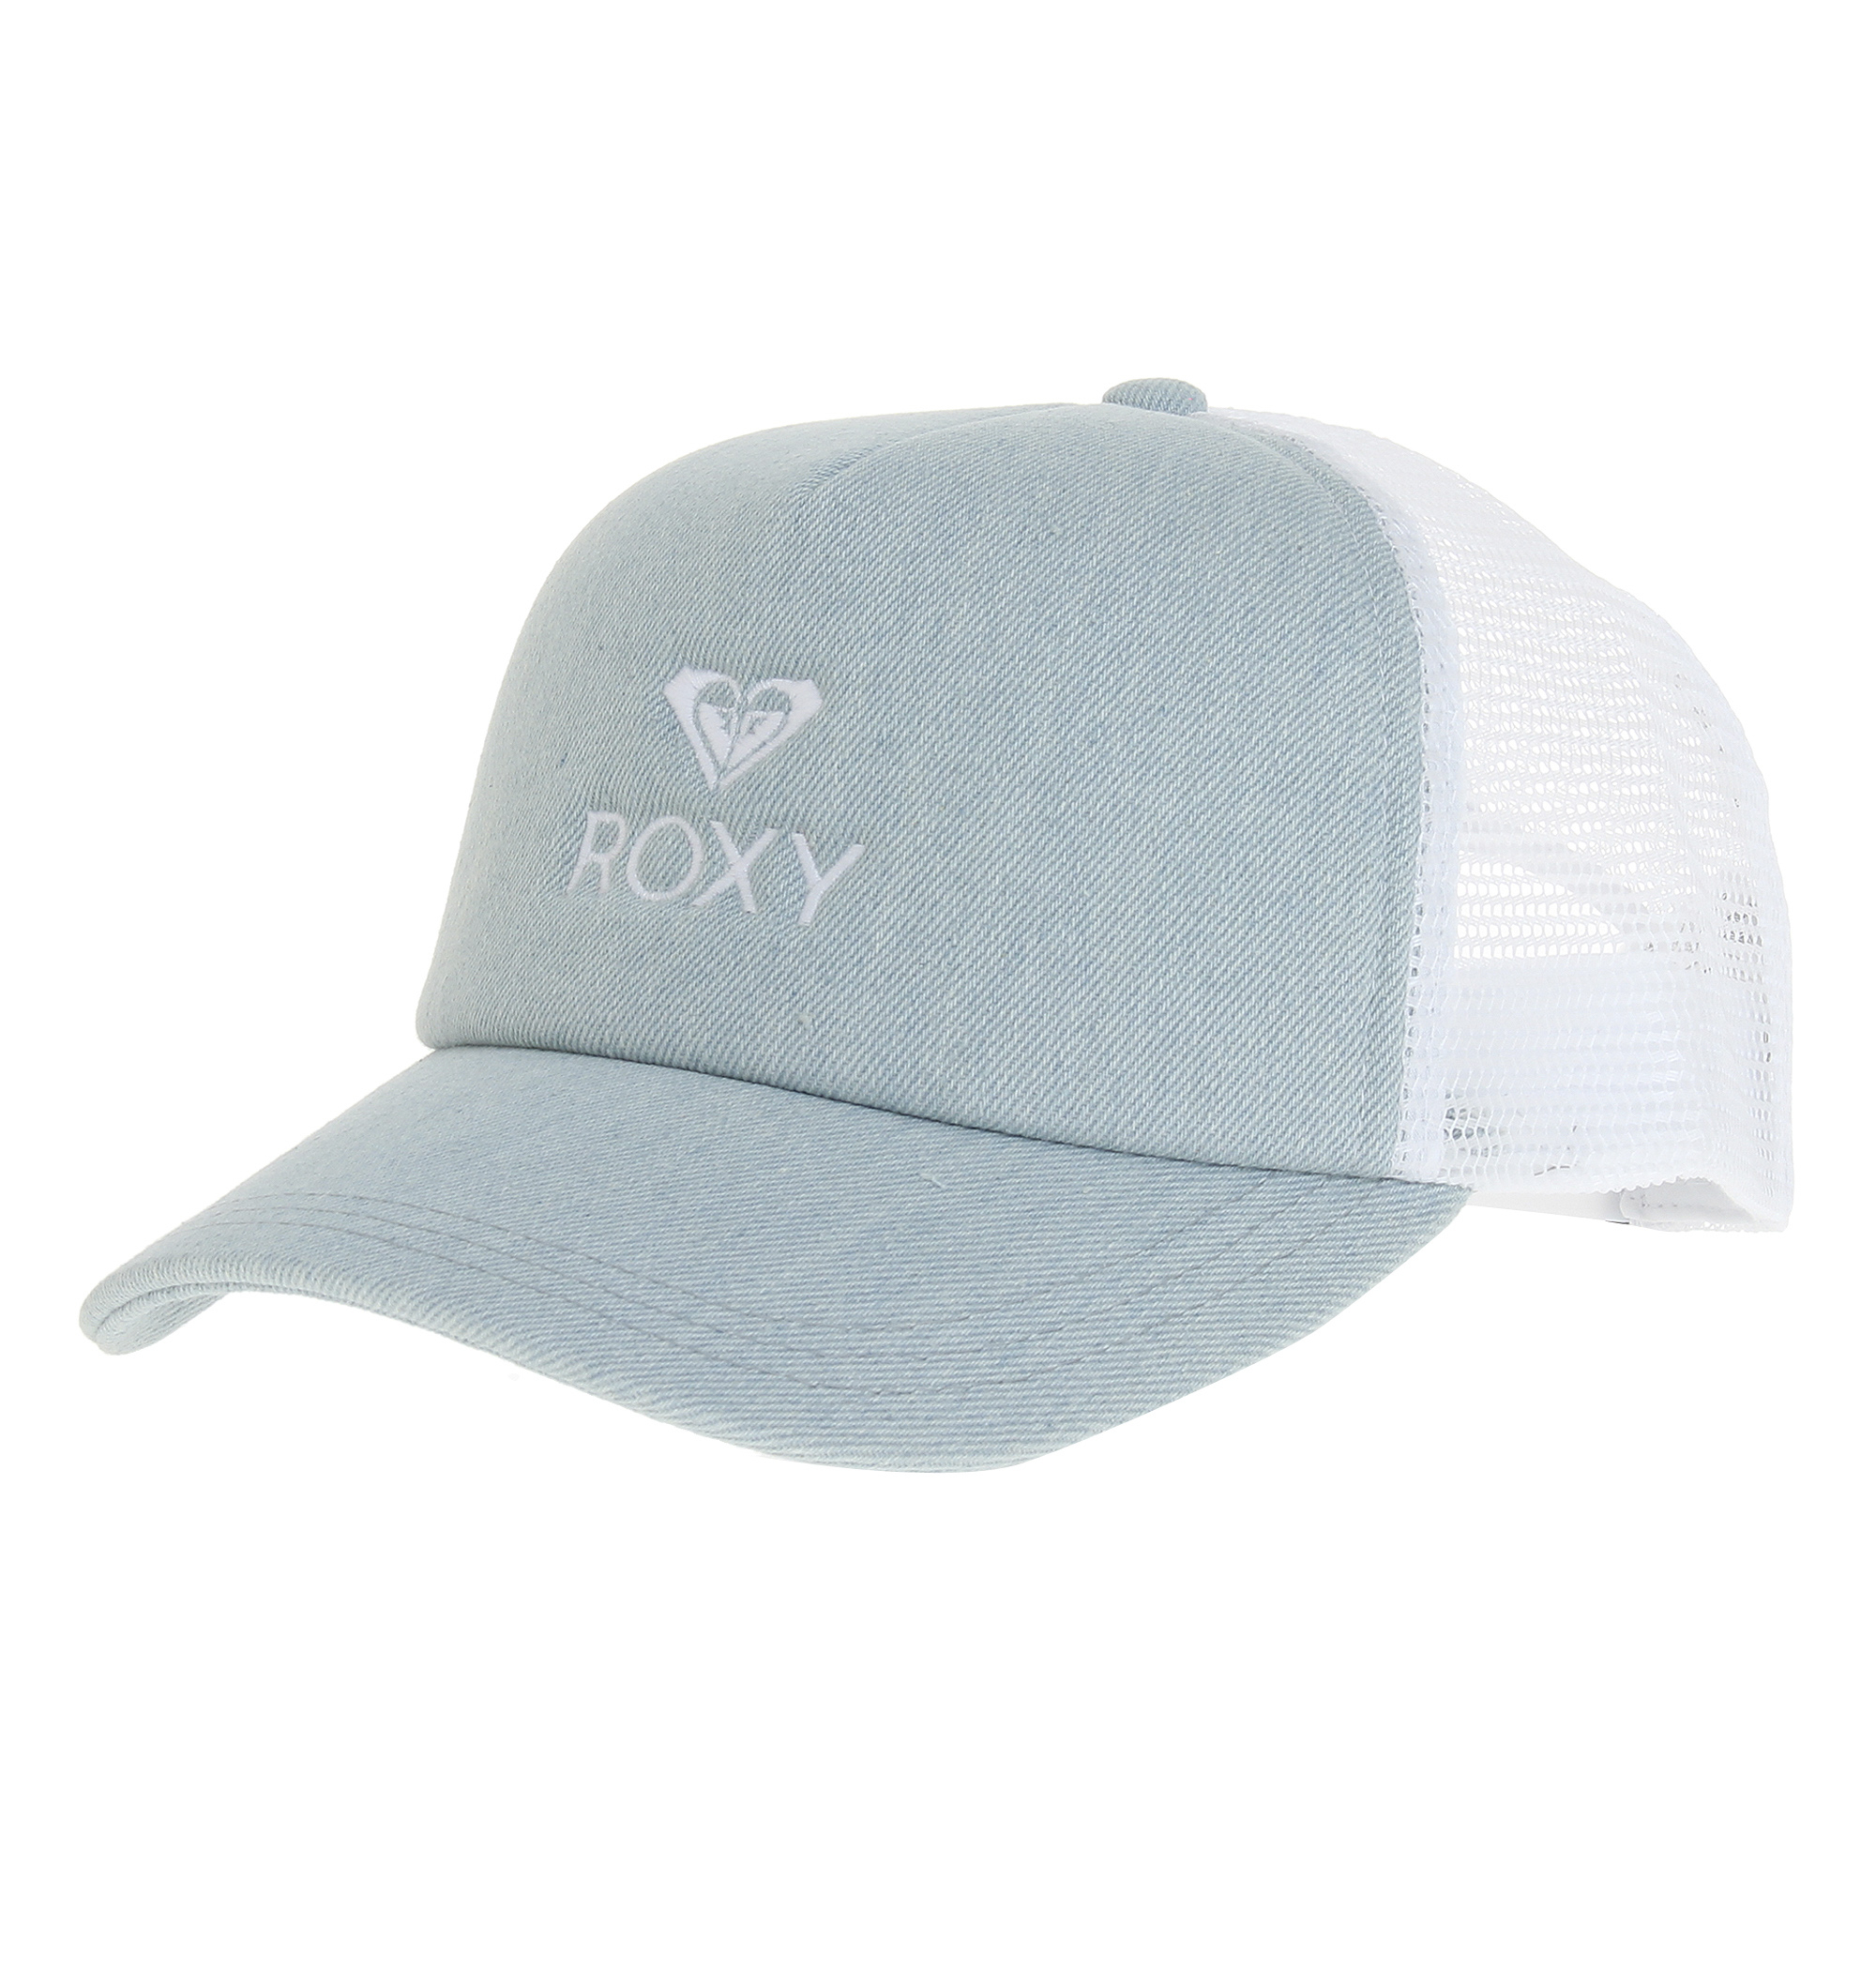 ＜Roxy＞YOURS フロントのブランドアイコンとロゴがさりげないアクセントのスポーティなキャップ画像